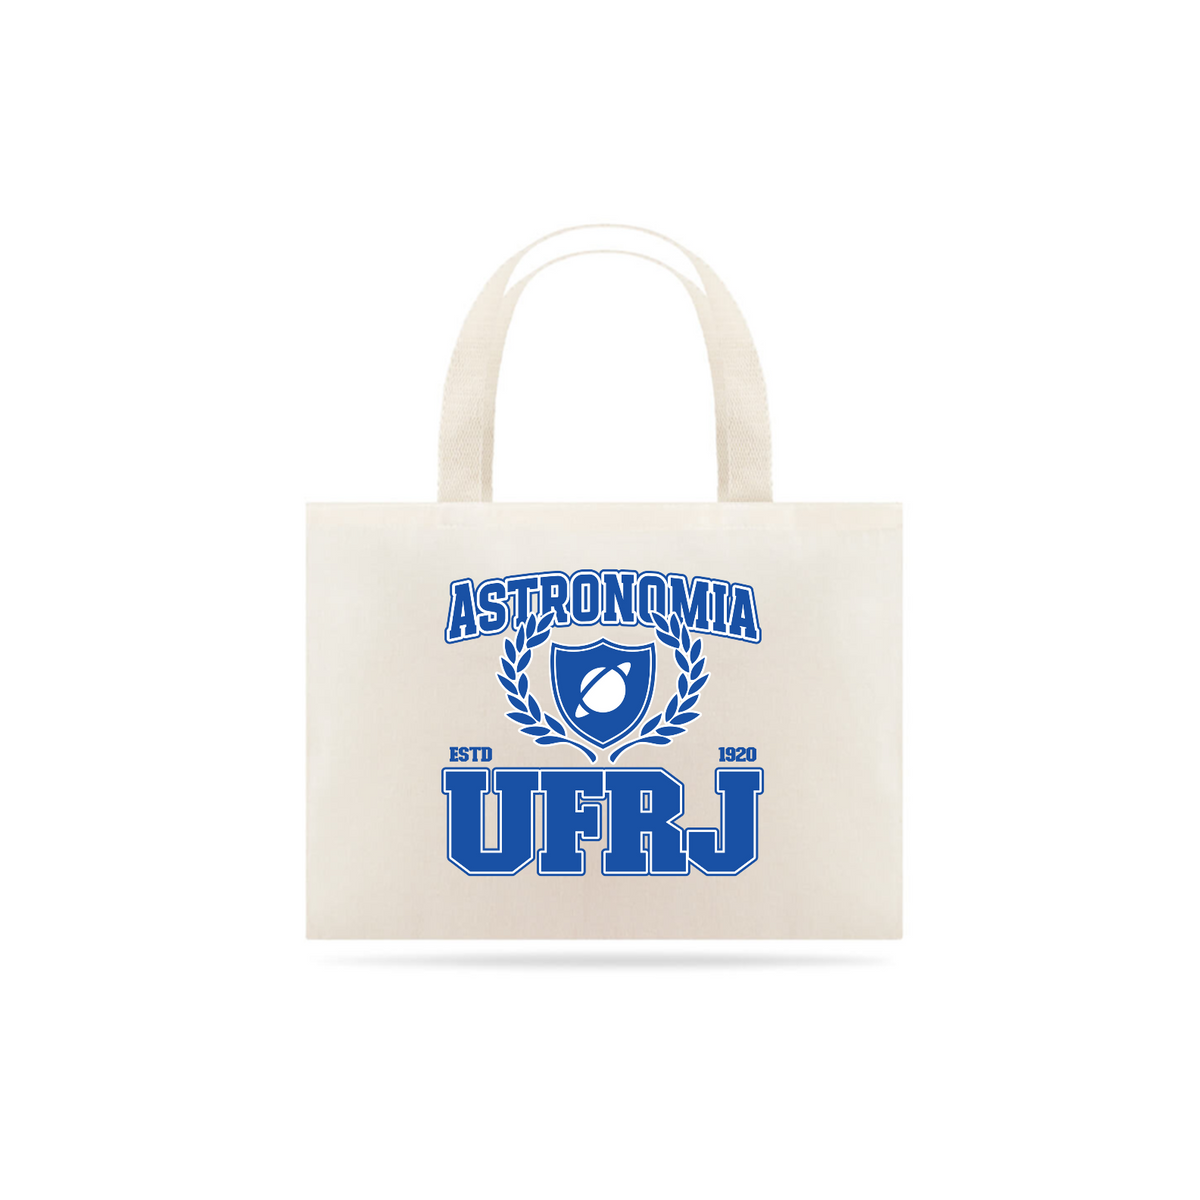 Nome do produto: UniVerso - Ecobag Astronomia UFRJ